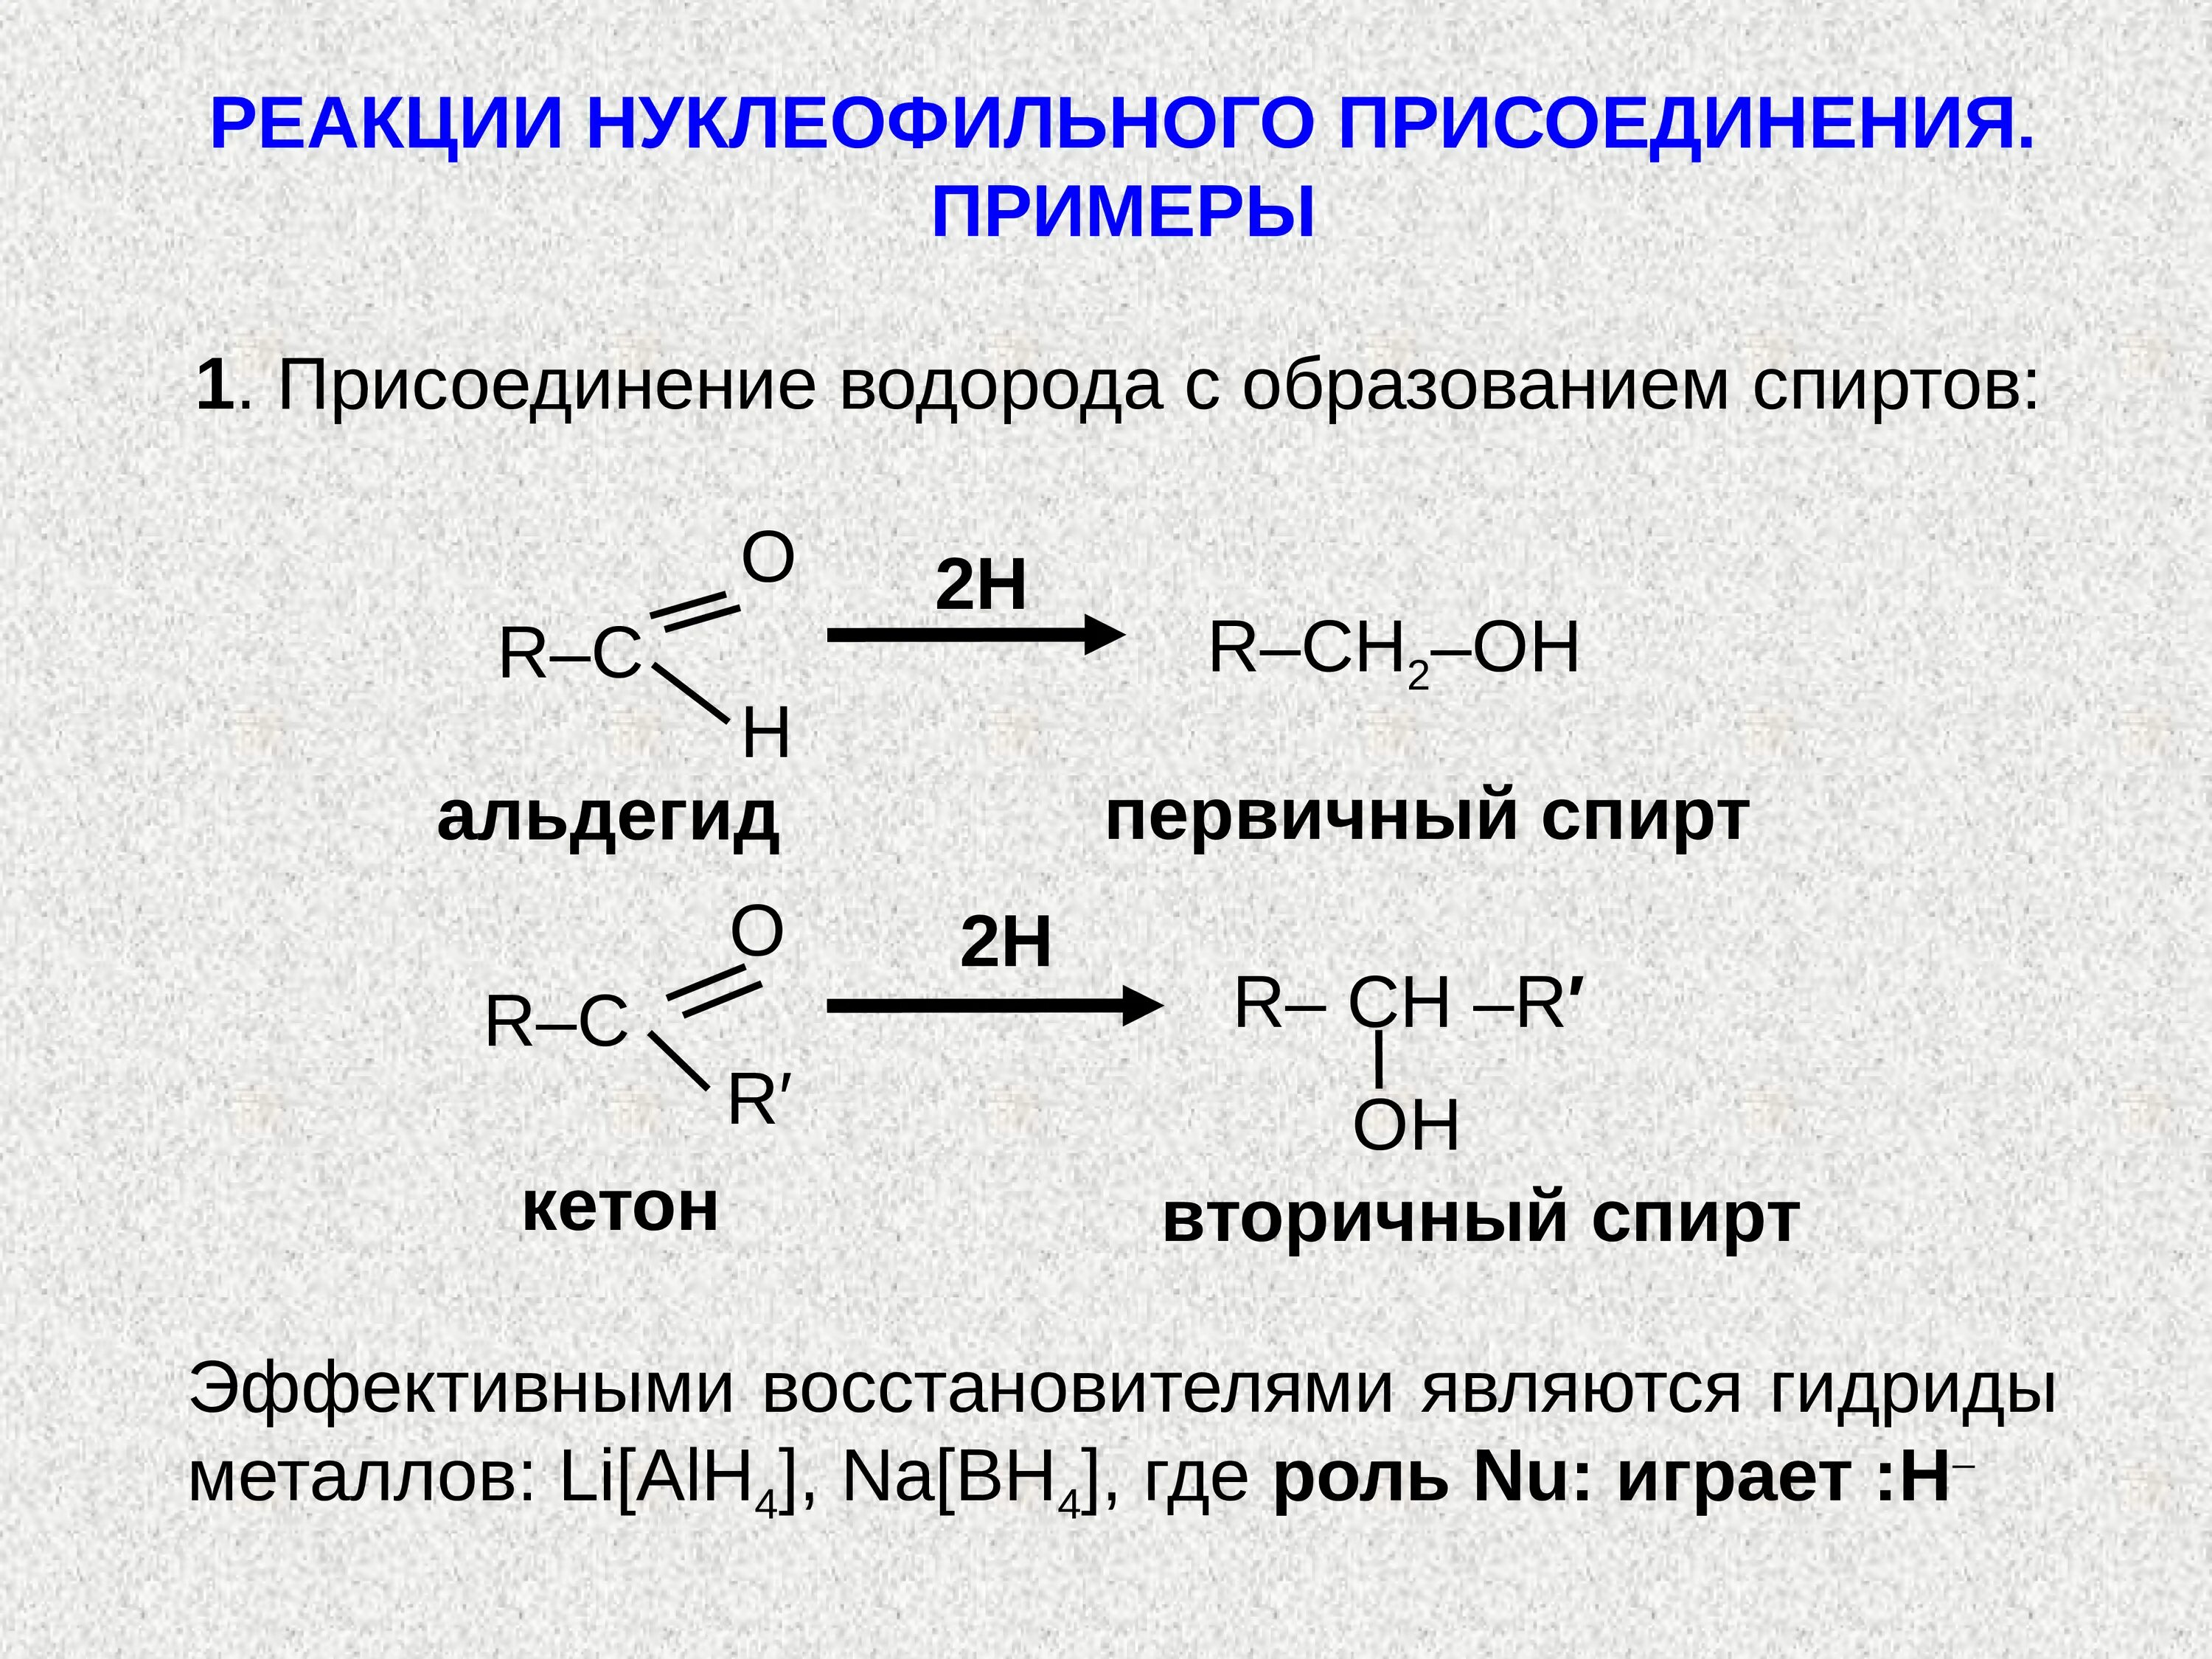 Реакция нуклеофильного присоединения альдегидов. Присоединение спиртов альдегидов и кетонов. Нуклеофильное присоединение альдегидов и кетонов. Реакции нуклеофильного присоединения альдегидов и кетонов. Альдегид и водород реакция